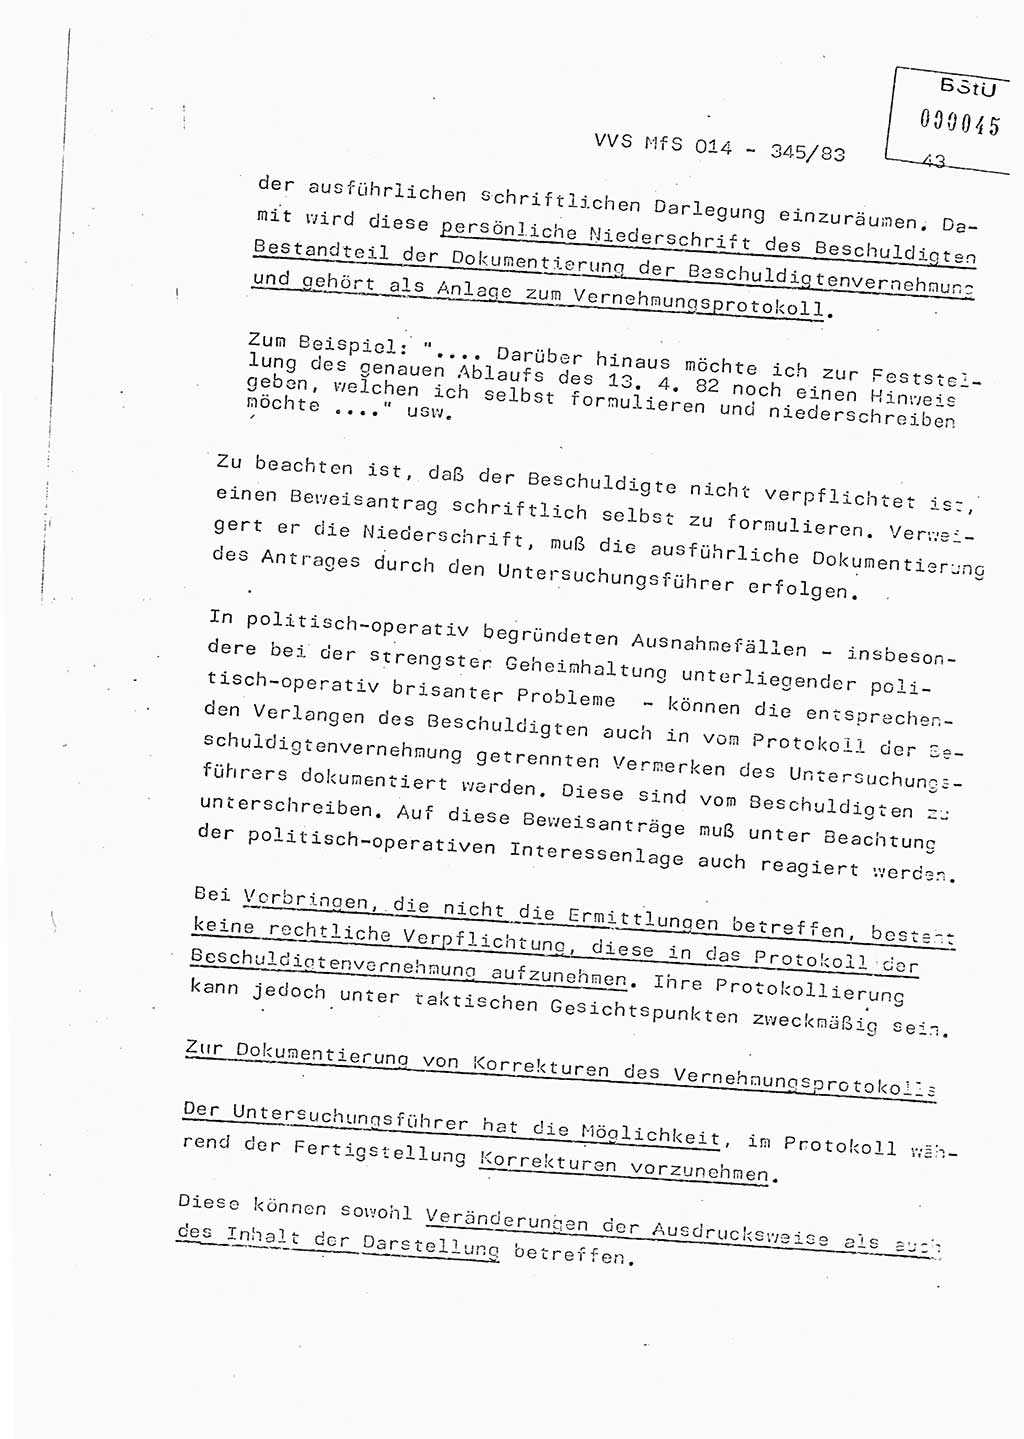 Lektion Ministerium für Staatssicherheit (MfS) [Deutsche Demokratische Republik (DDR)], Hauptabteilung (HA) Ⅸ, Vertrauliche Verschlußsache (VVS) o014-345/83, Berlin 1983, Seite 43 (Lekt. MfS DDR HA Ⅸ VVS o014-345/83 1983, S. 43)